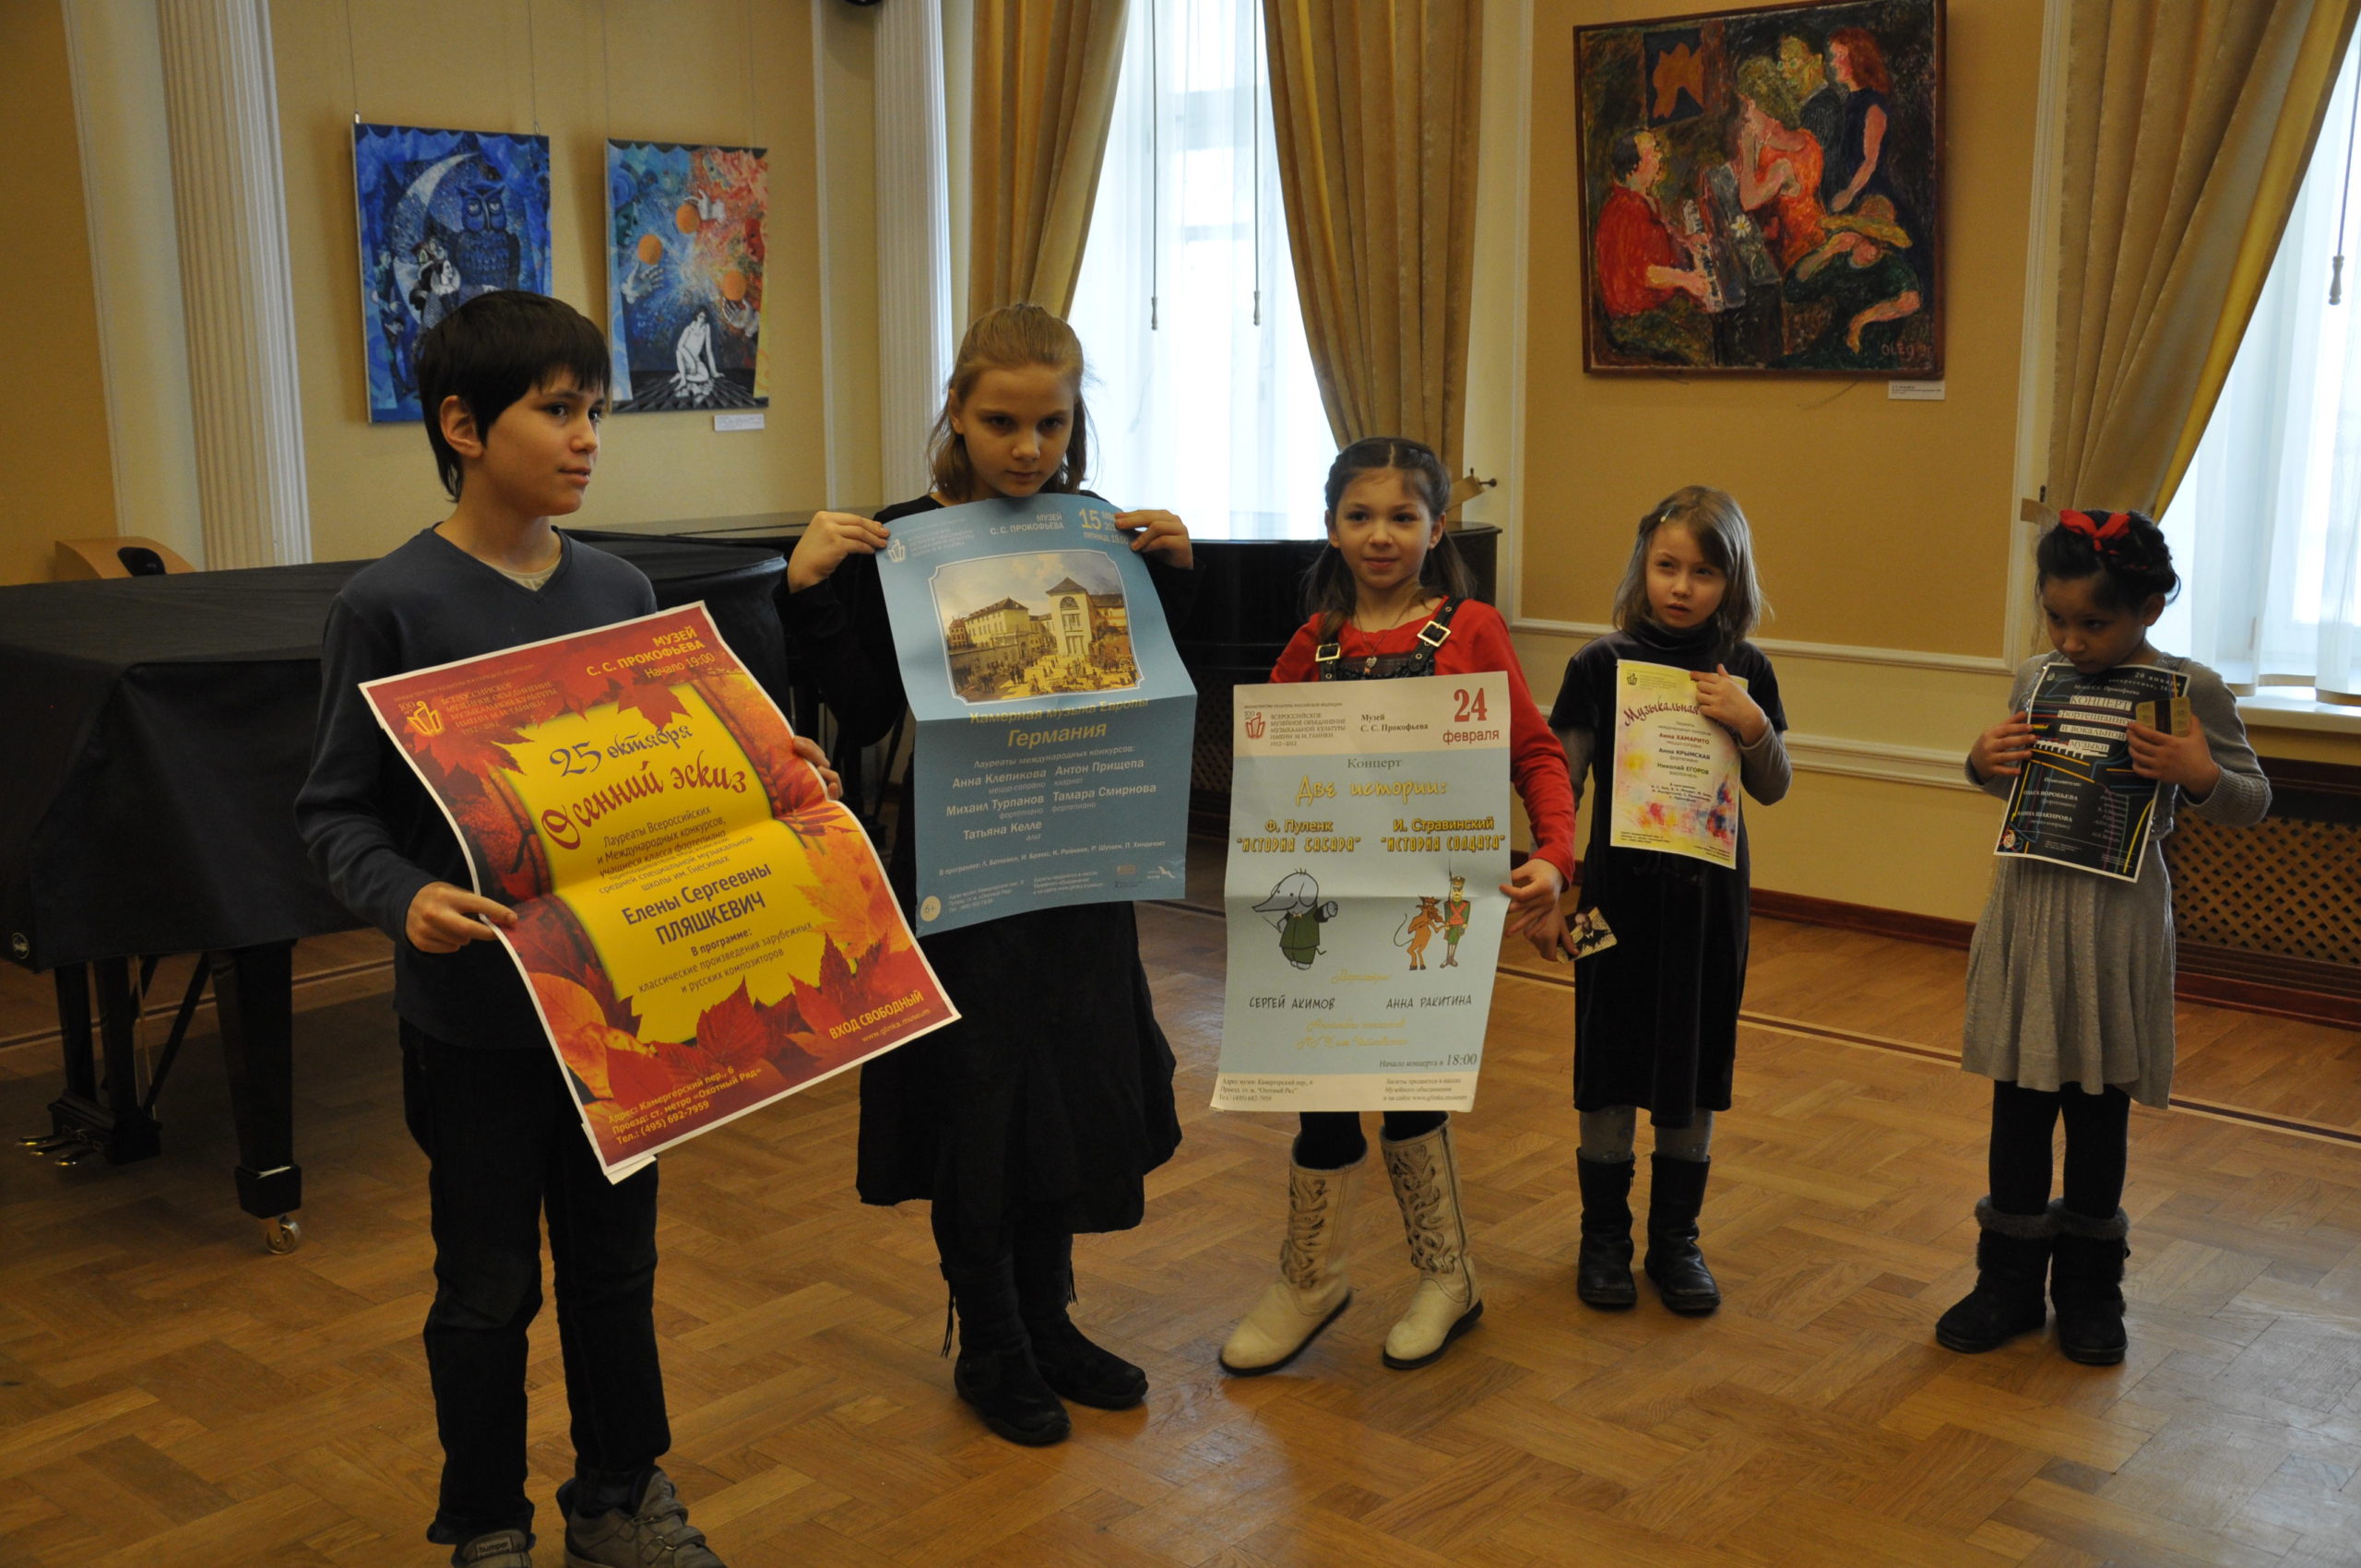 НФПП организовал экскурсию в музей С.С. Прокофьева для воспитанников пансиона «Анита-центр Большая семья»